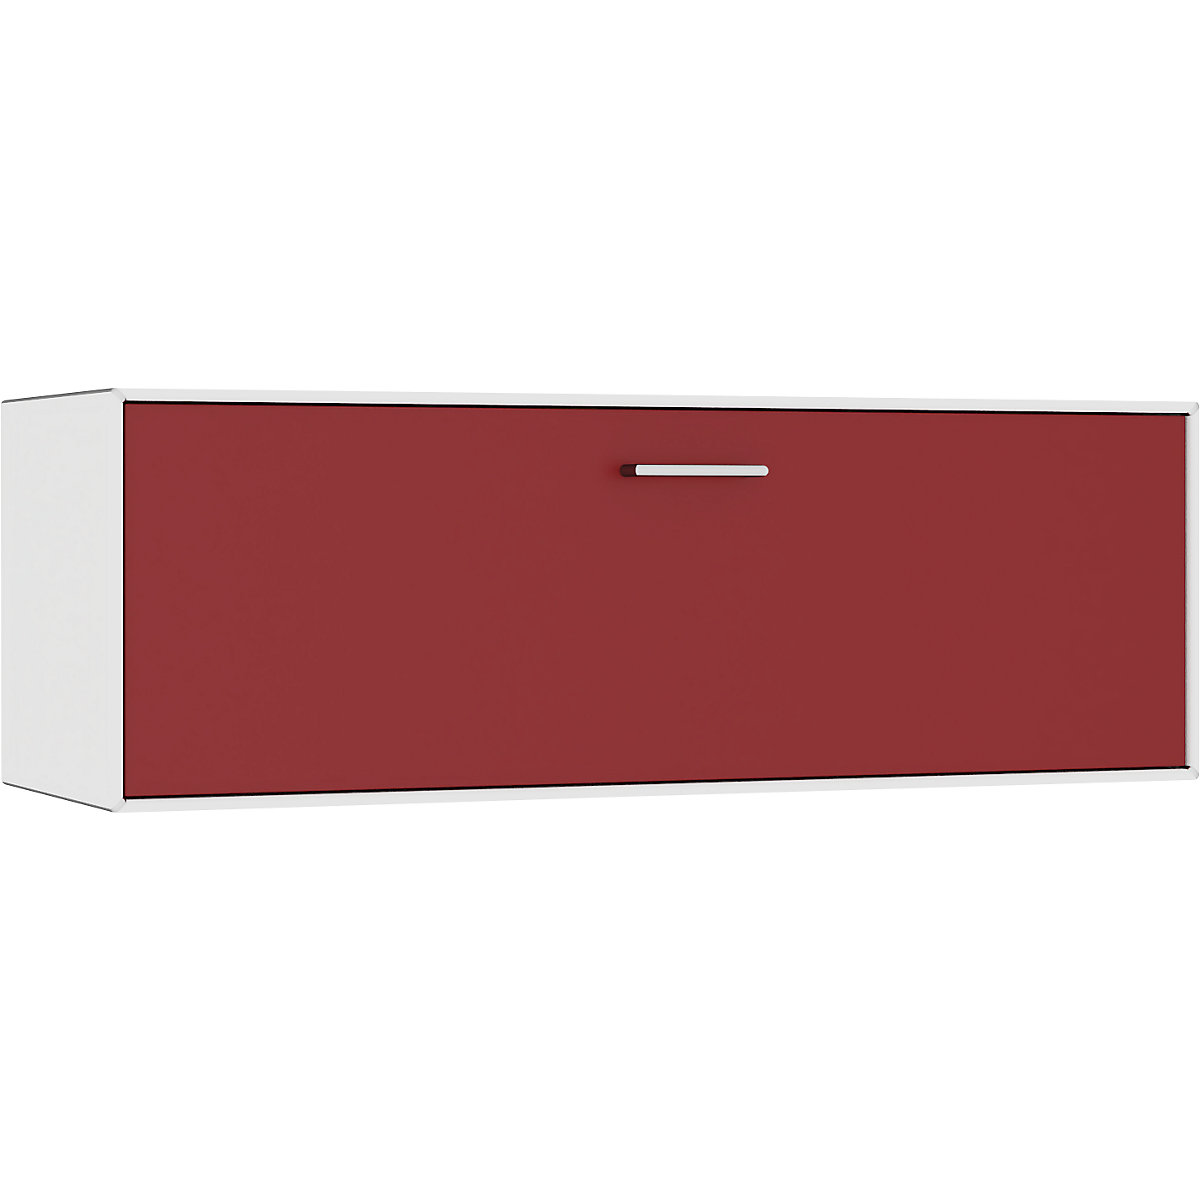 Compartimento individual, para colgar – mauser, 1 cajón, anchura 1155 mm, blanco puro / rojo rubí-7